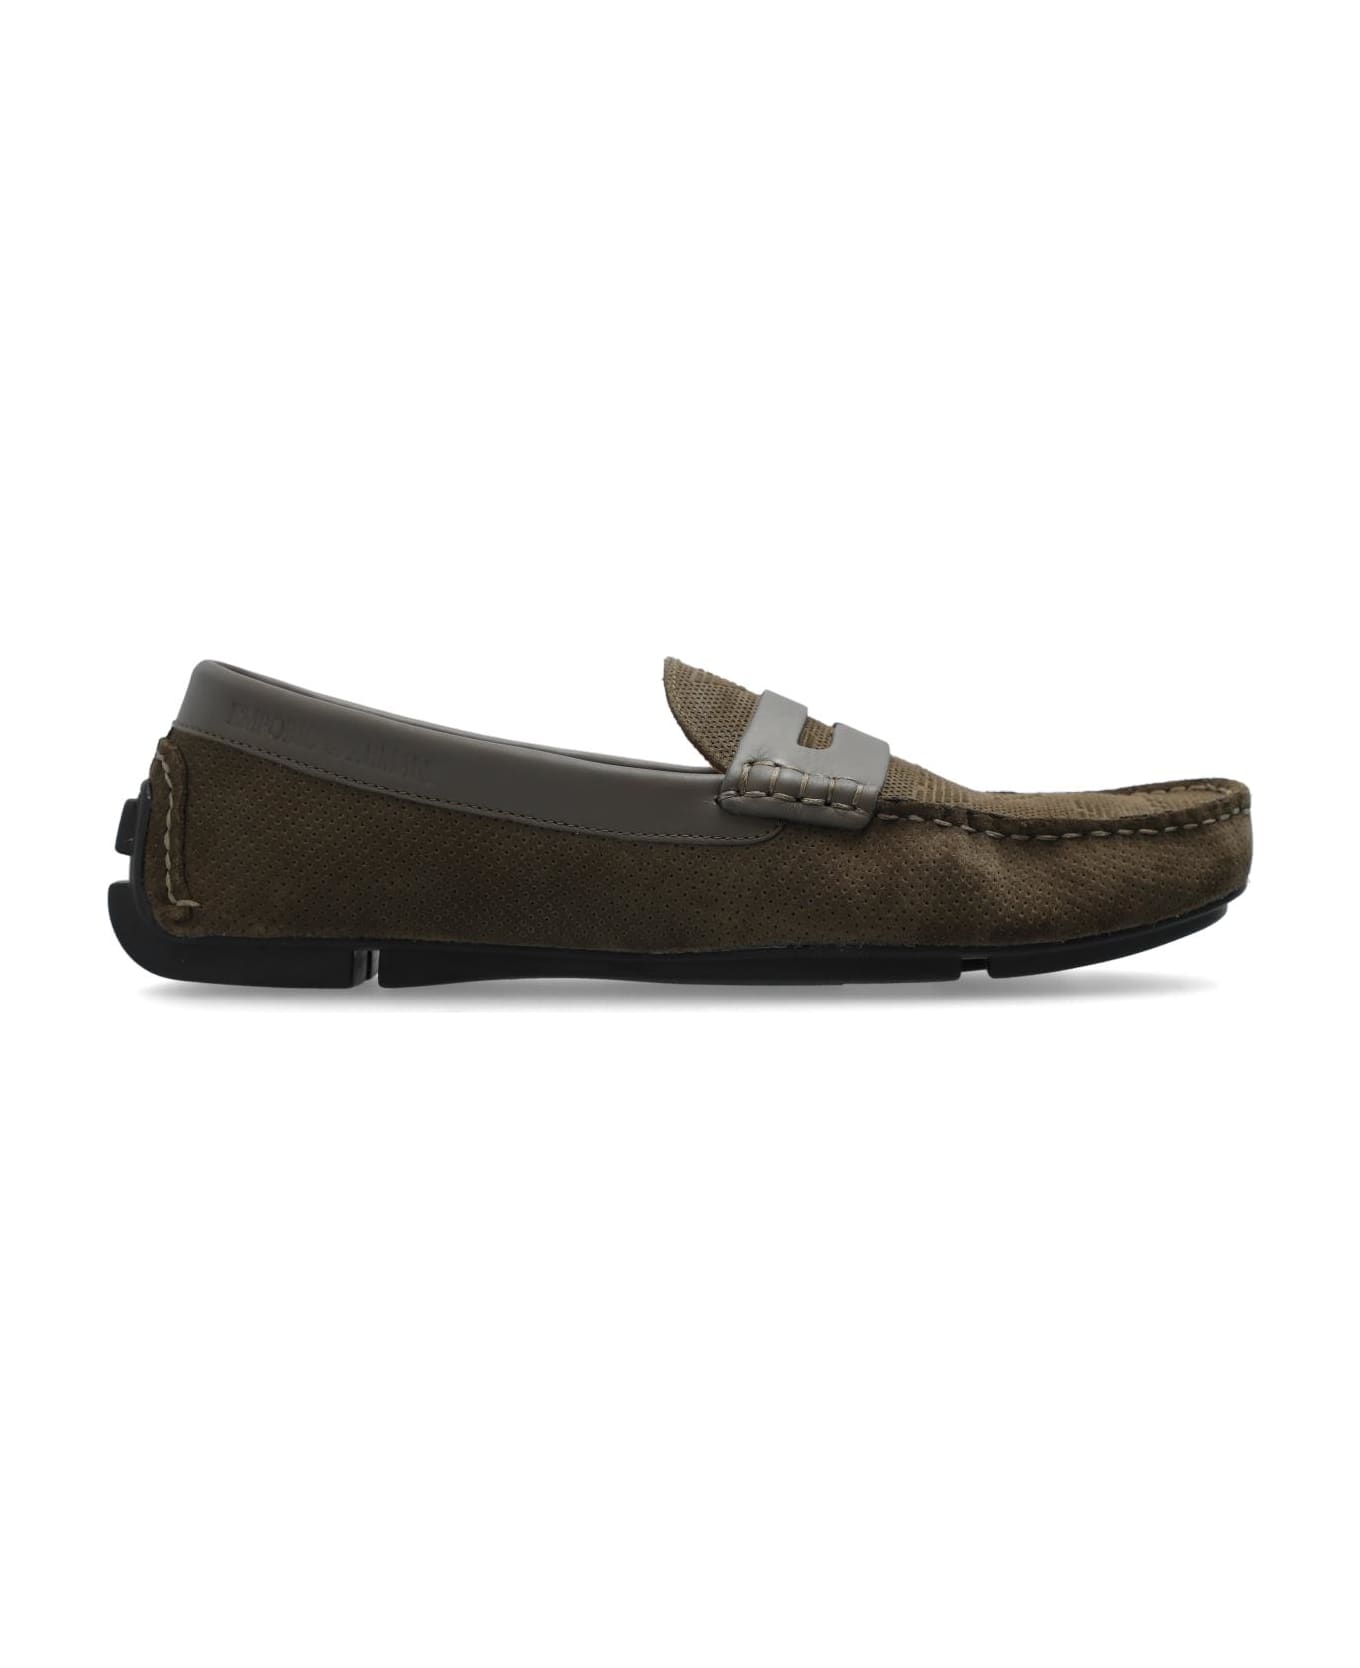 Emporio Armani Leather Loafers - Marrone